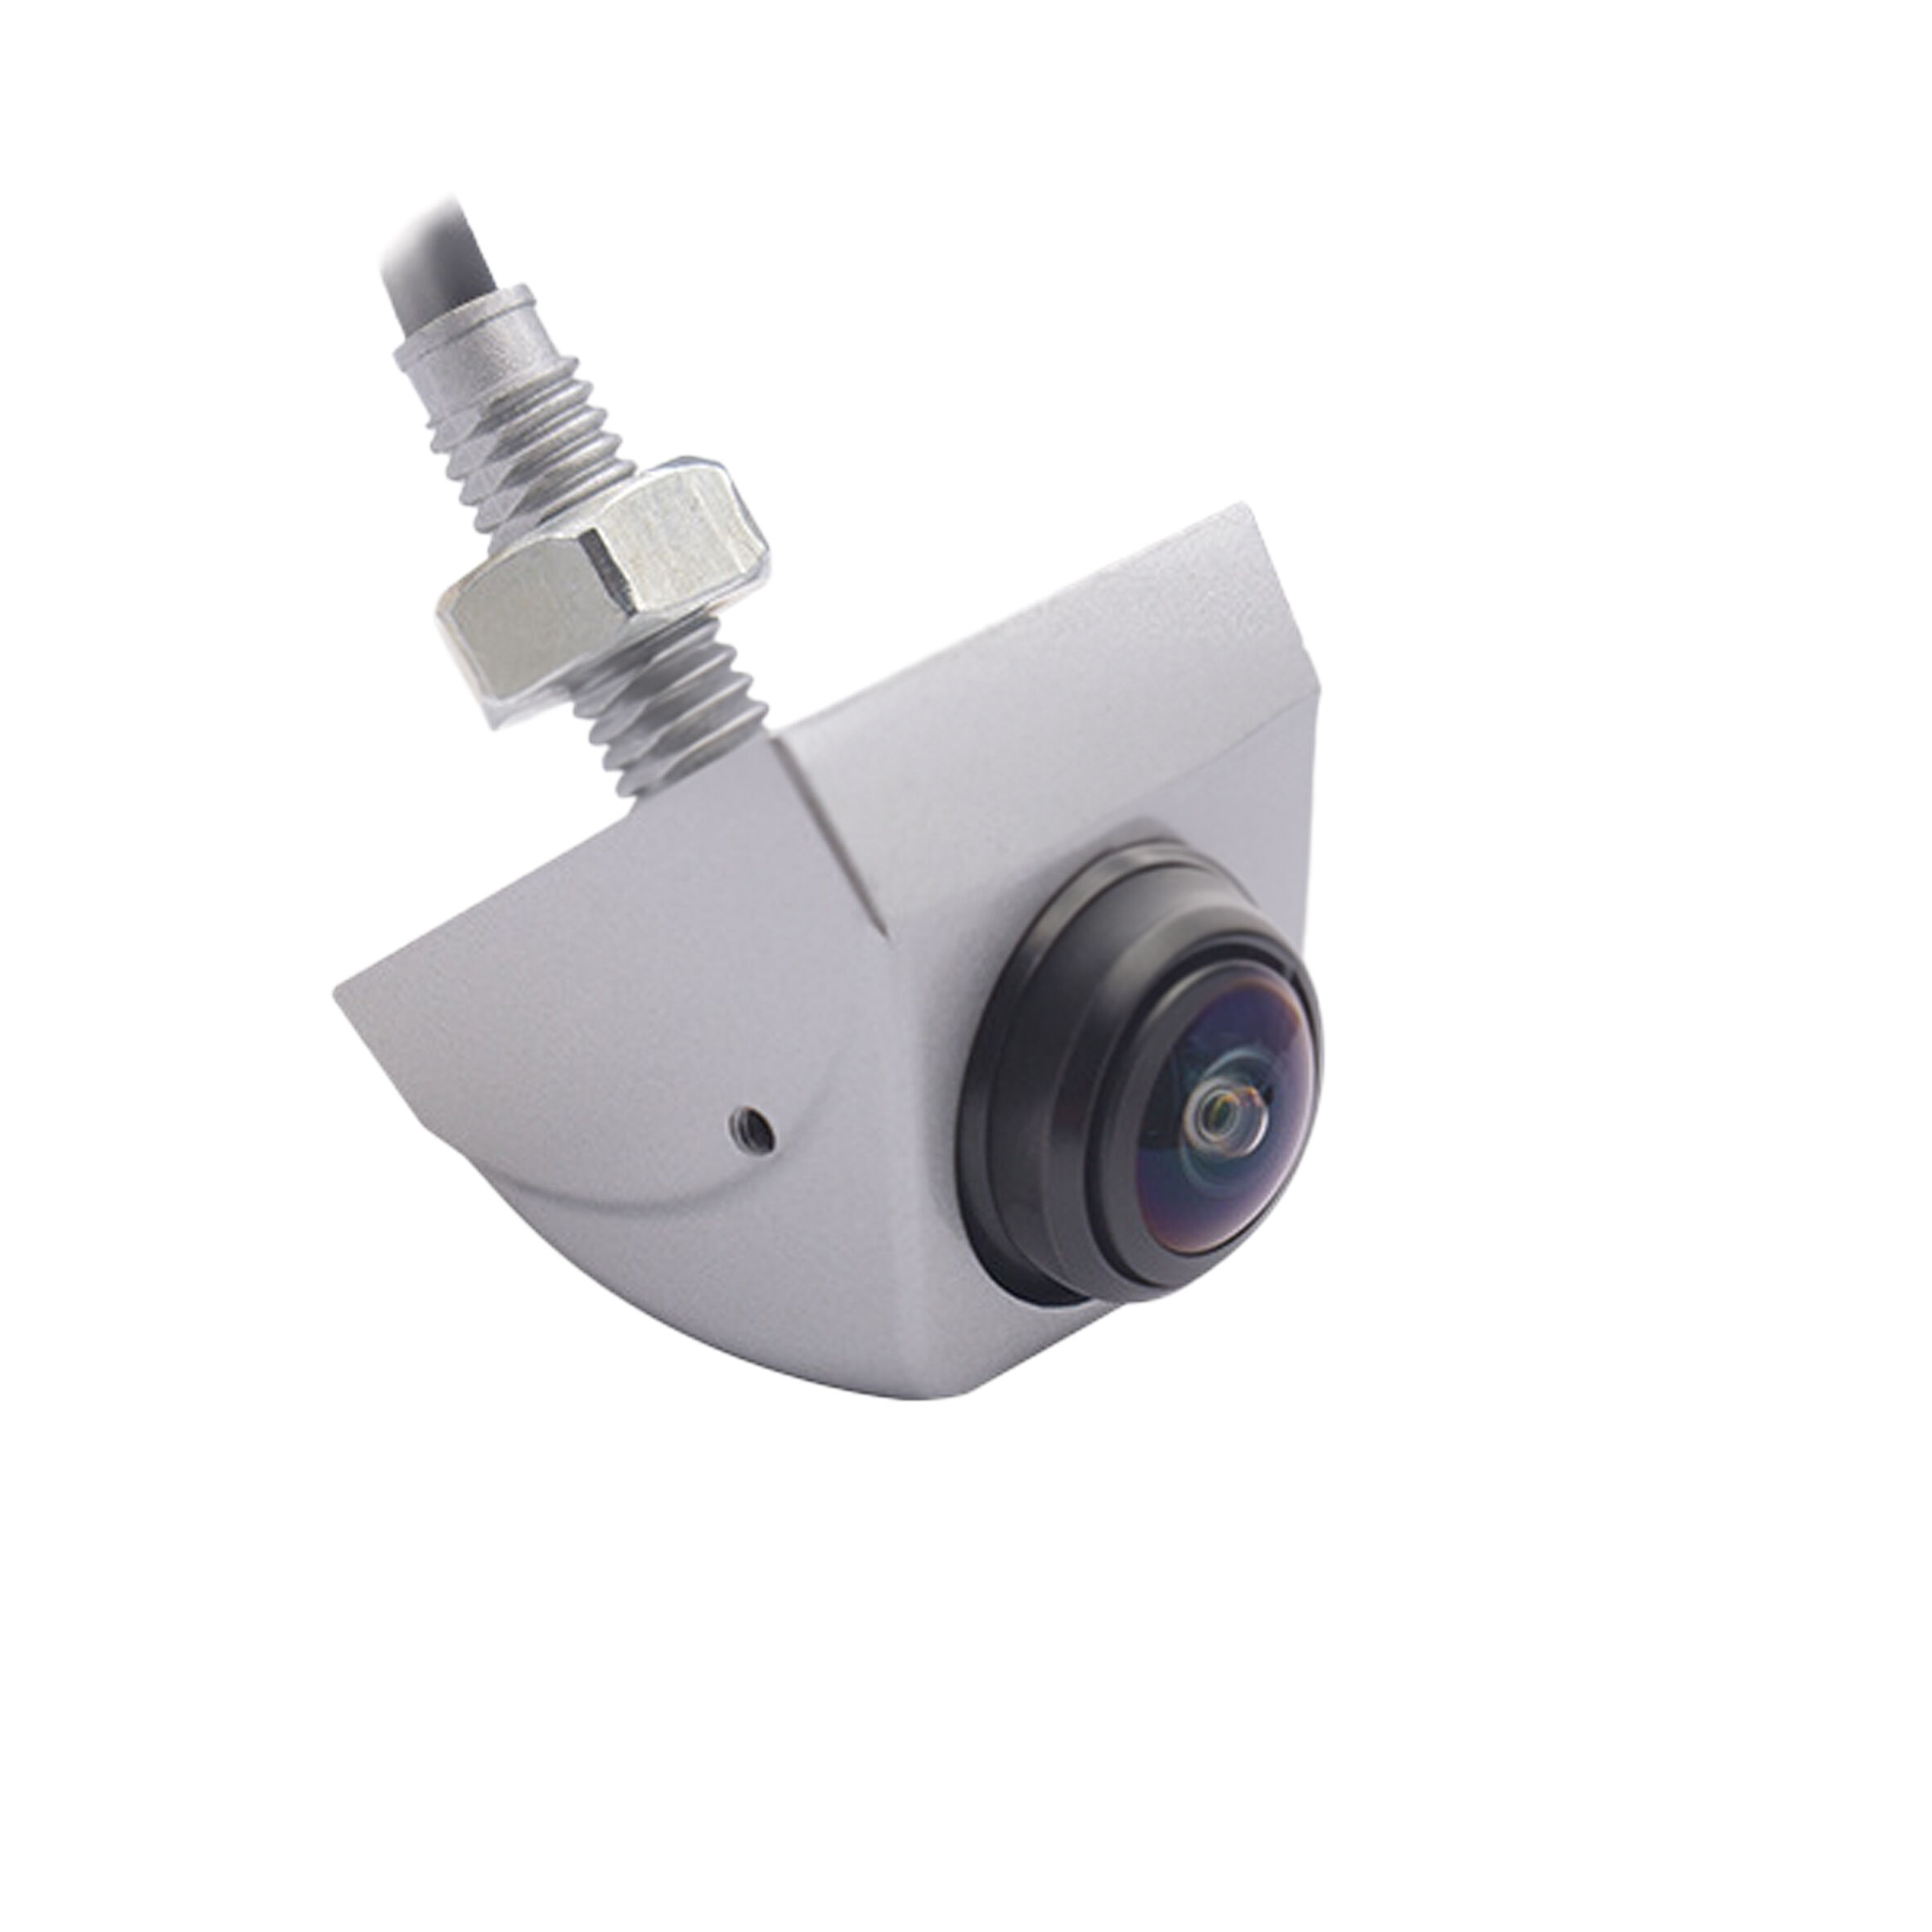 KFZ 16243: Kit caméra de recul pour voiture, sans fil, vision nocturne, 4,3  chez reichelt elektronik